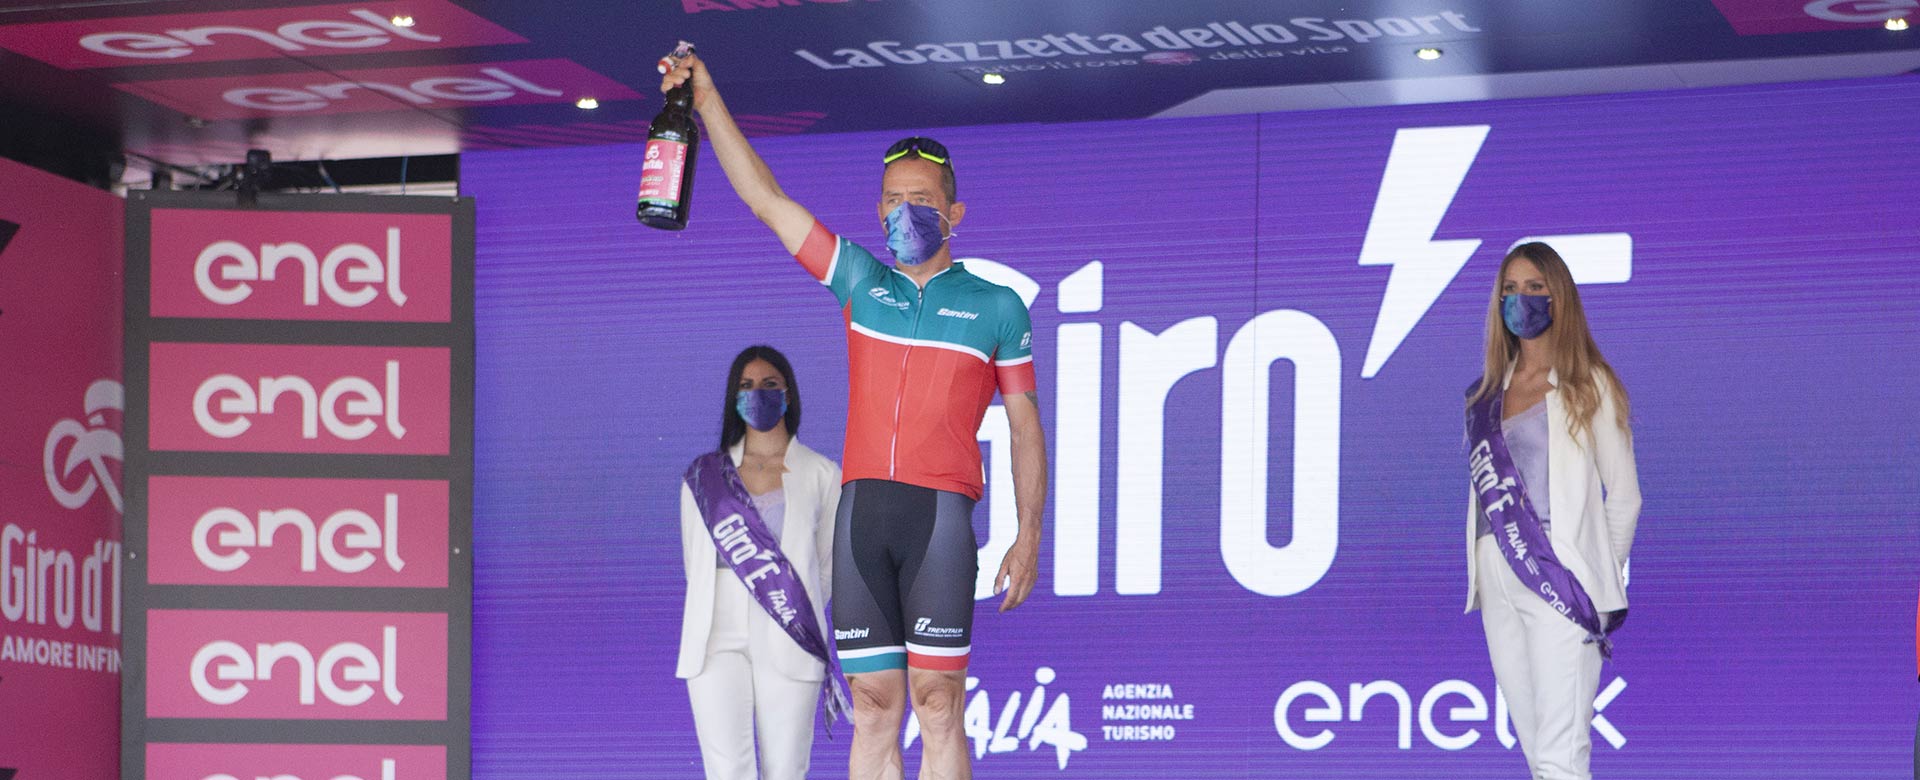 Il momento della premiazione del team Trenitalia nell'ultima tappa del Giro E a Milano